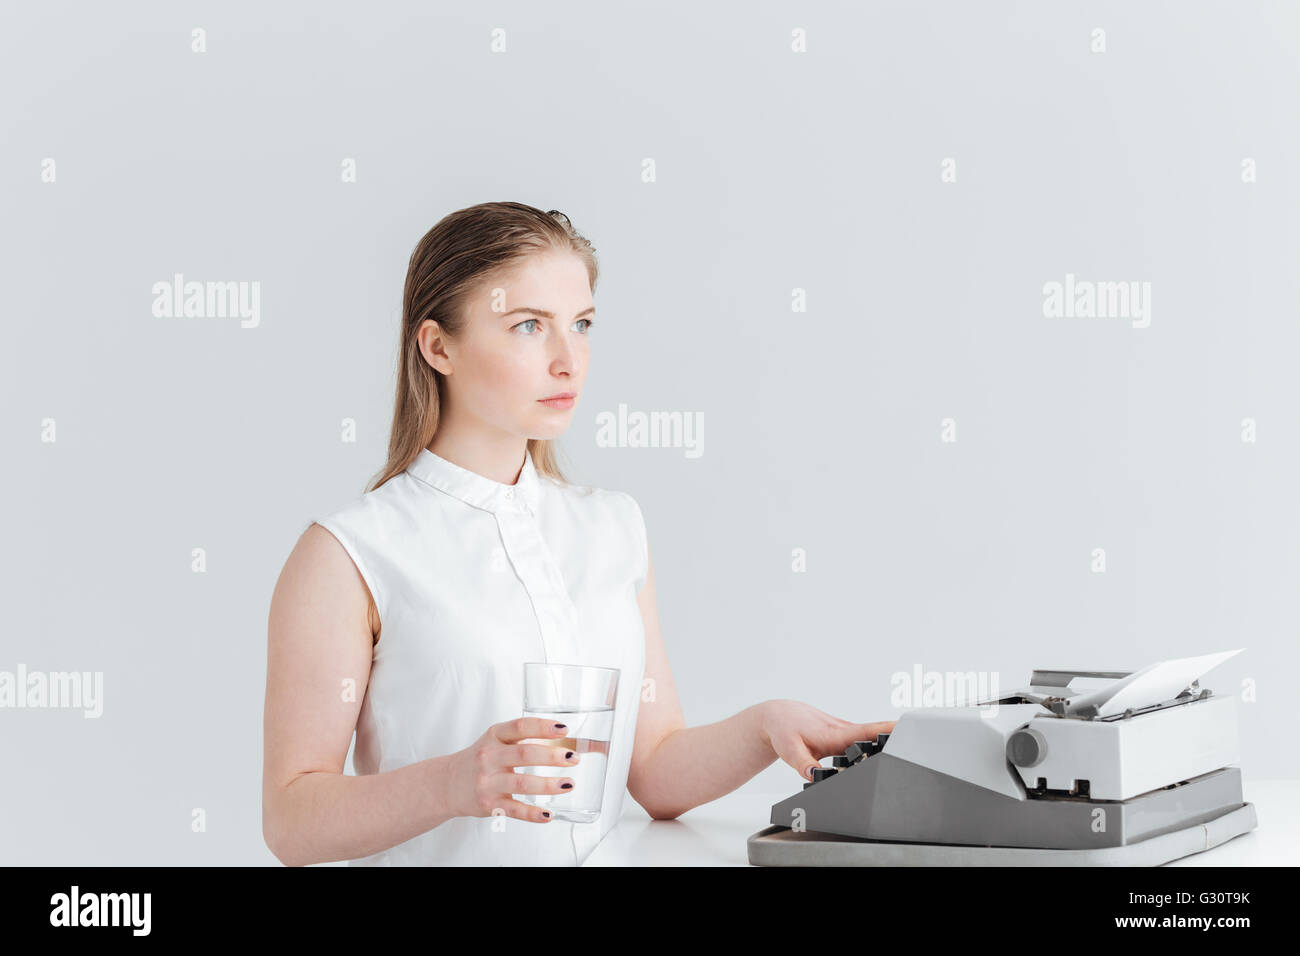 Jeune femme worrking sur machine d'impression rétro et holding glass avec de l'eau isolé sur fond blanc Banque D'Images